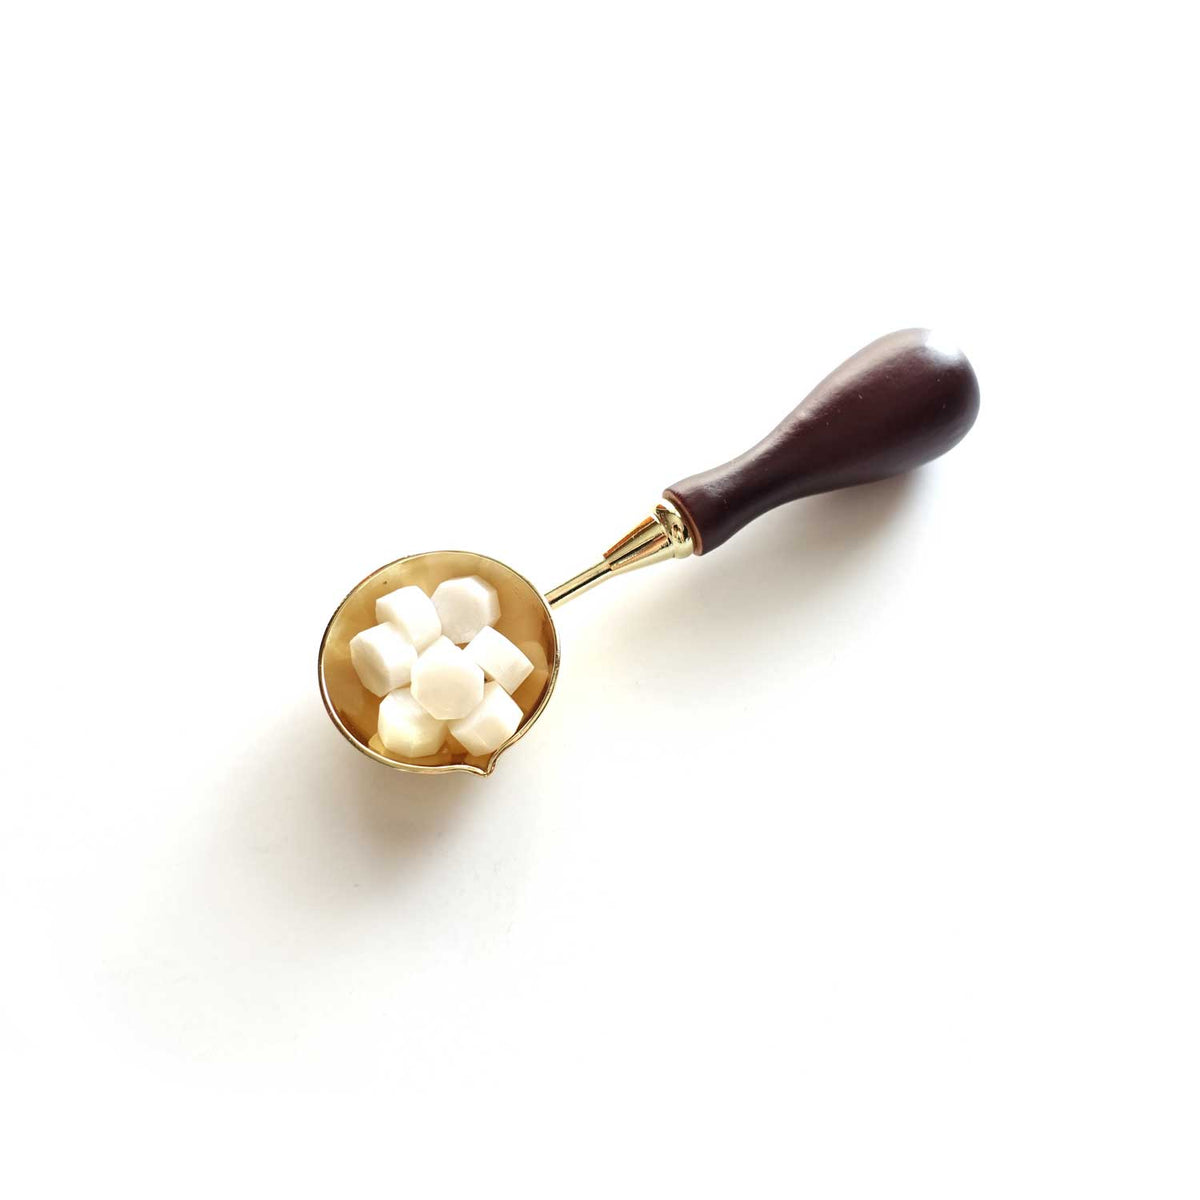 Golden wooden handle medium wax seal spoon